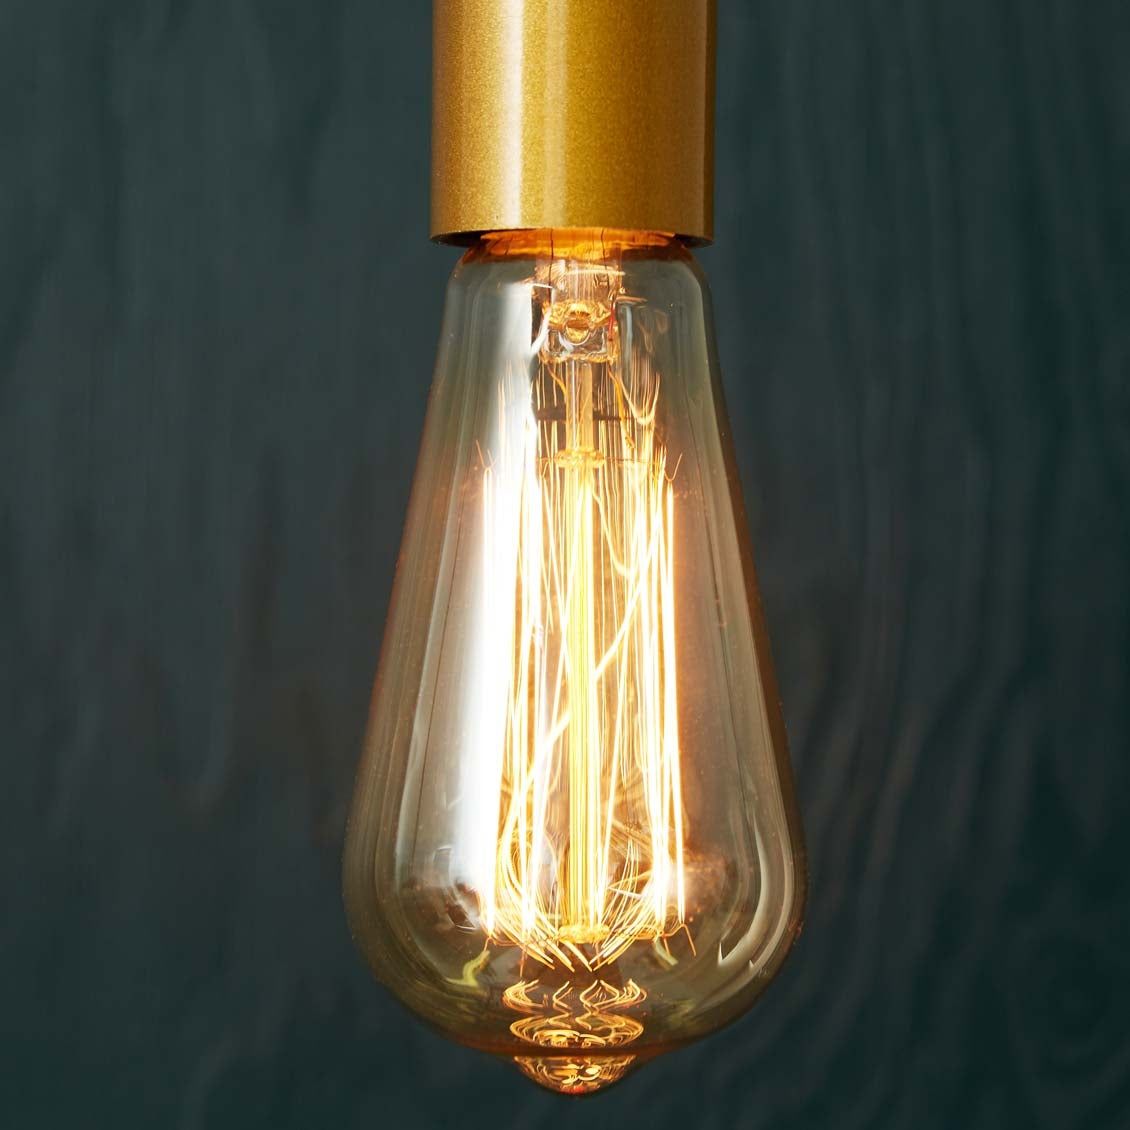 L'ampoule à filament DEL: vintage, longue durée, économe - Écohabitation